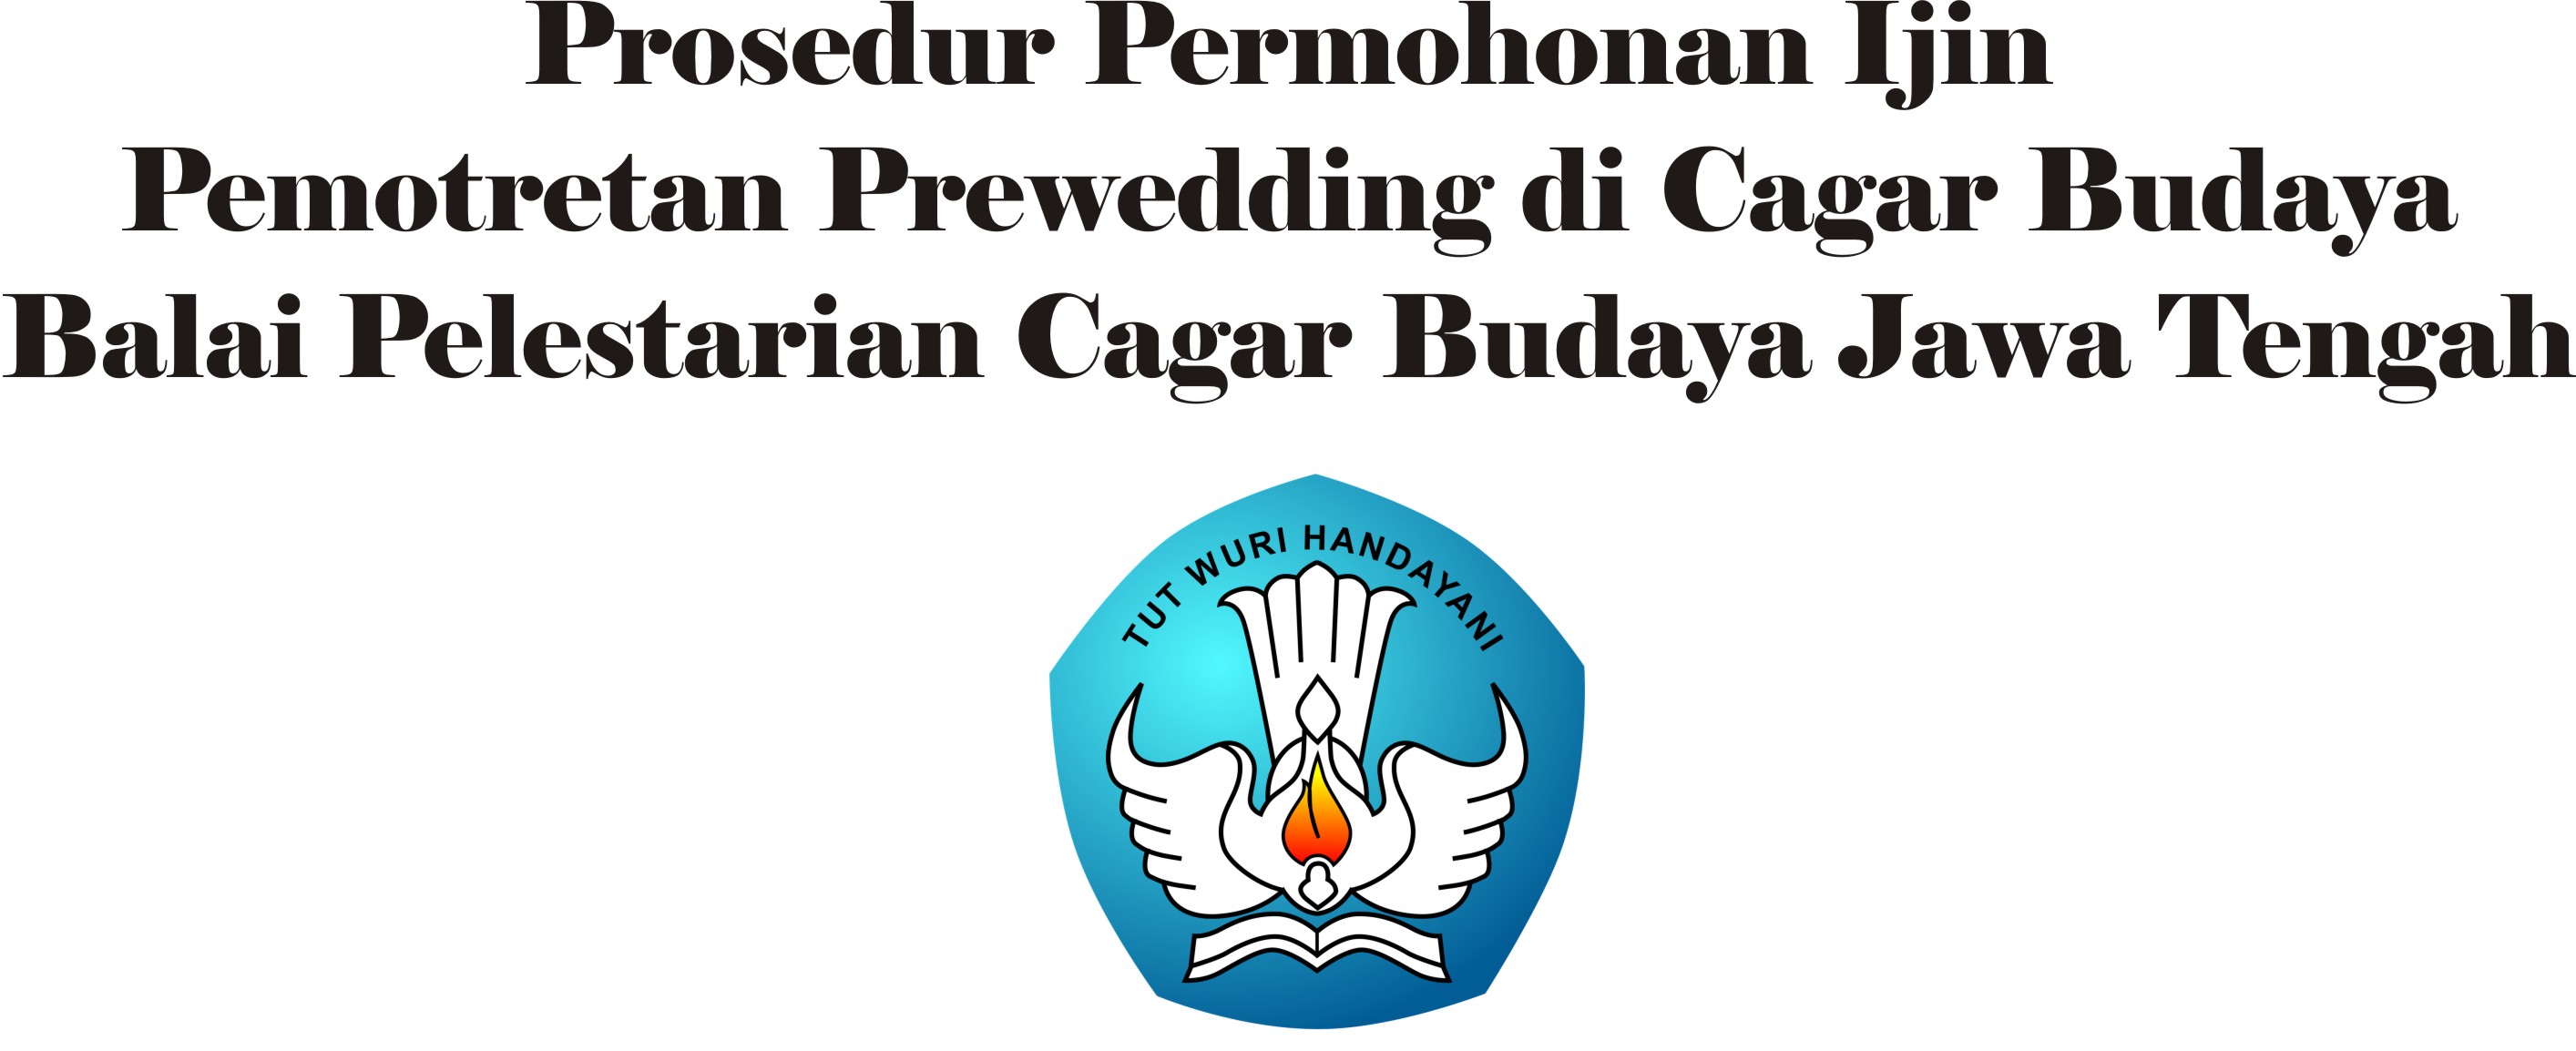 You are currently viewing Prosedur Permohonan Ijin Pemotretan Prewedding di Situs Cagar Budaya di Lingkungan Balai Pelestarian Cagar Budaya Jawa Tengah